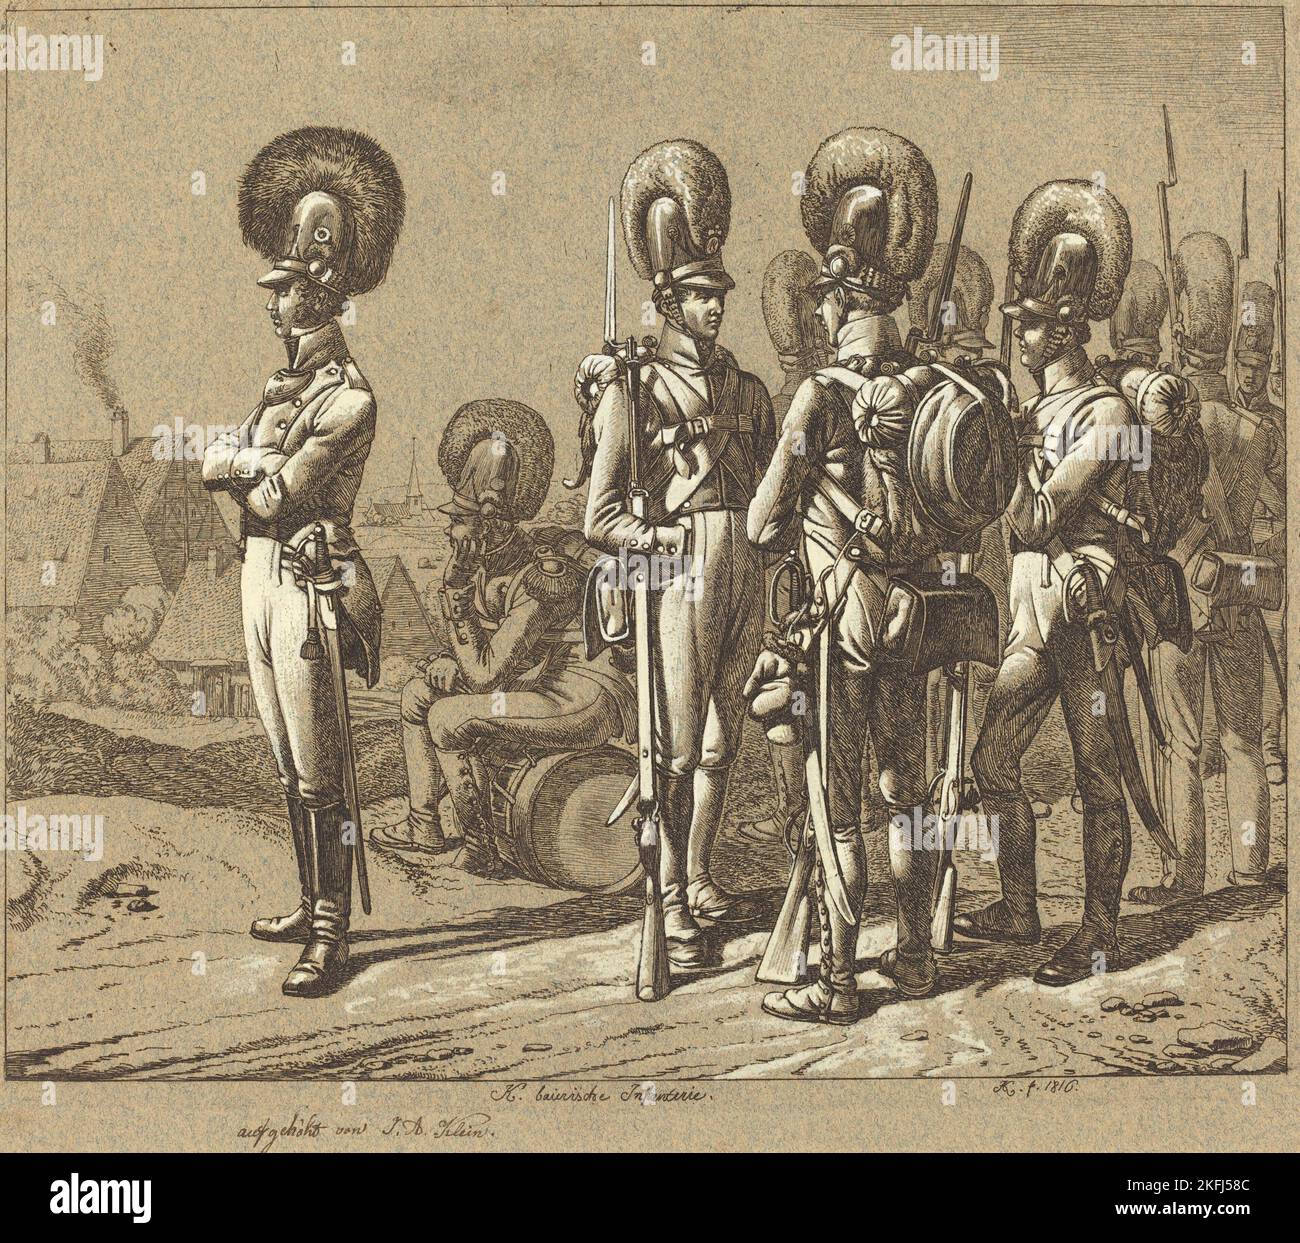 K. baierische Infanterie (Bavarian Infantrymen), 1816. Stock Photo